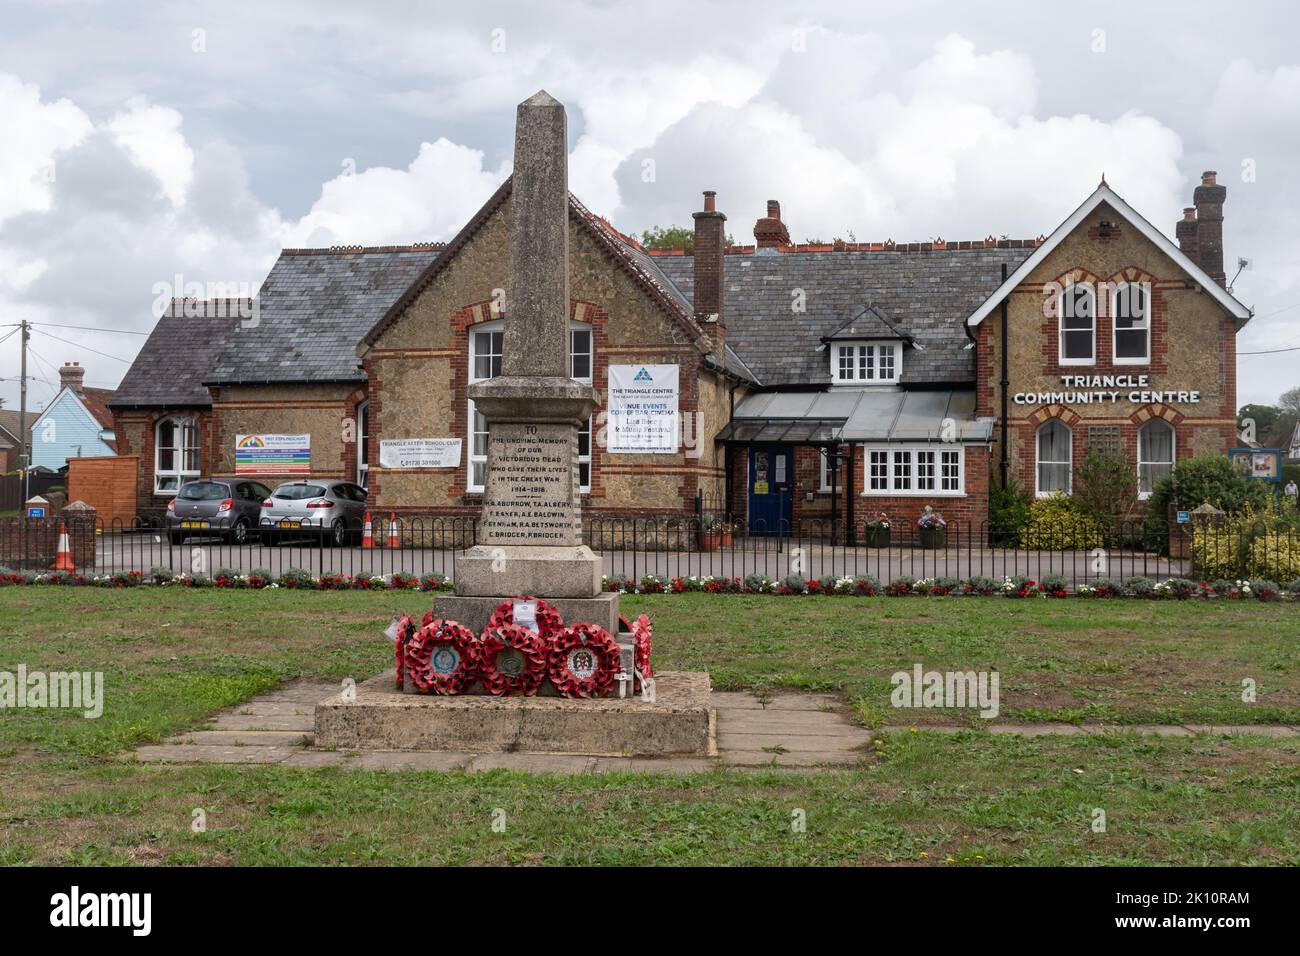 Monumento commemorativo di guerra nel villaggio di Lis di fronte al Triangle Community Centre, centro del villaggio di Lis, Hampshire, Inghilterra, Regno Unito Foto Stock